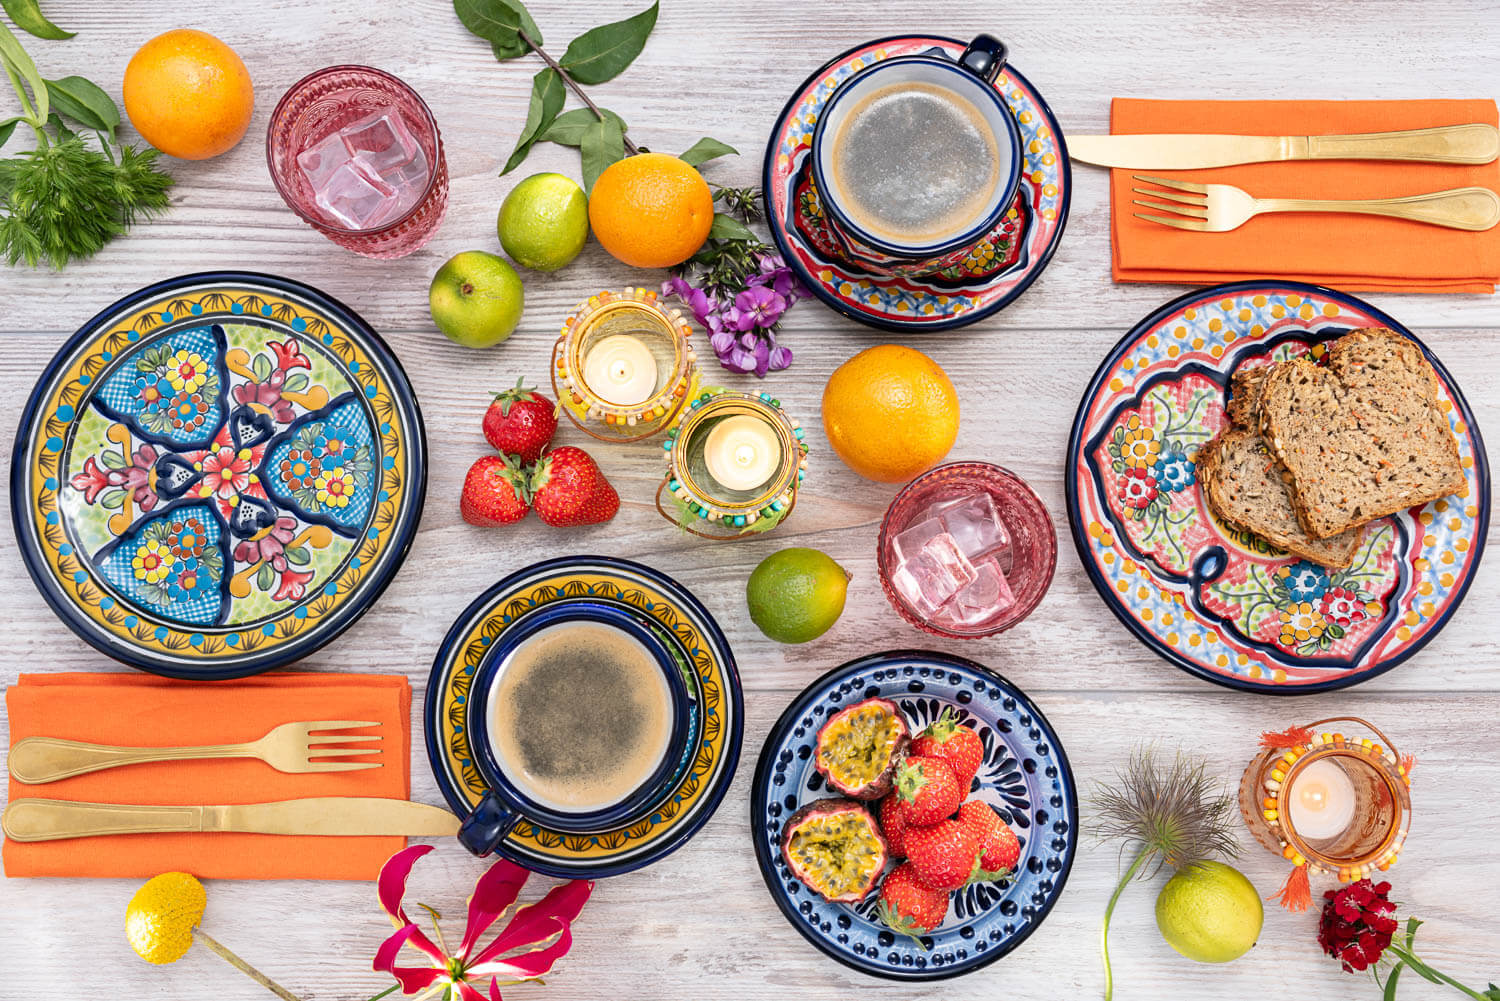 Gedeckter Tisch zum Frühstück mit buntem mexikanischen Geschirr, Obst und Blumen